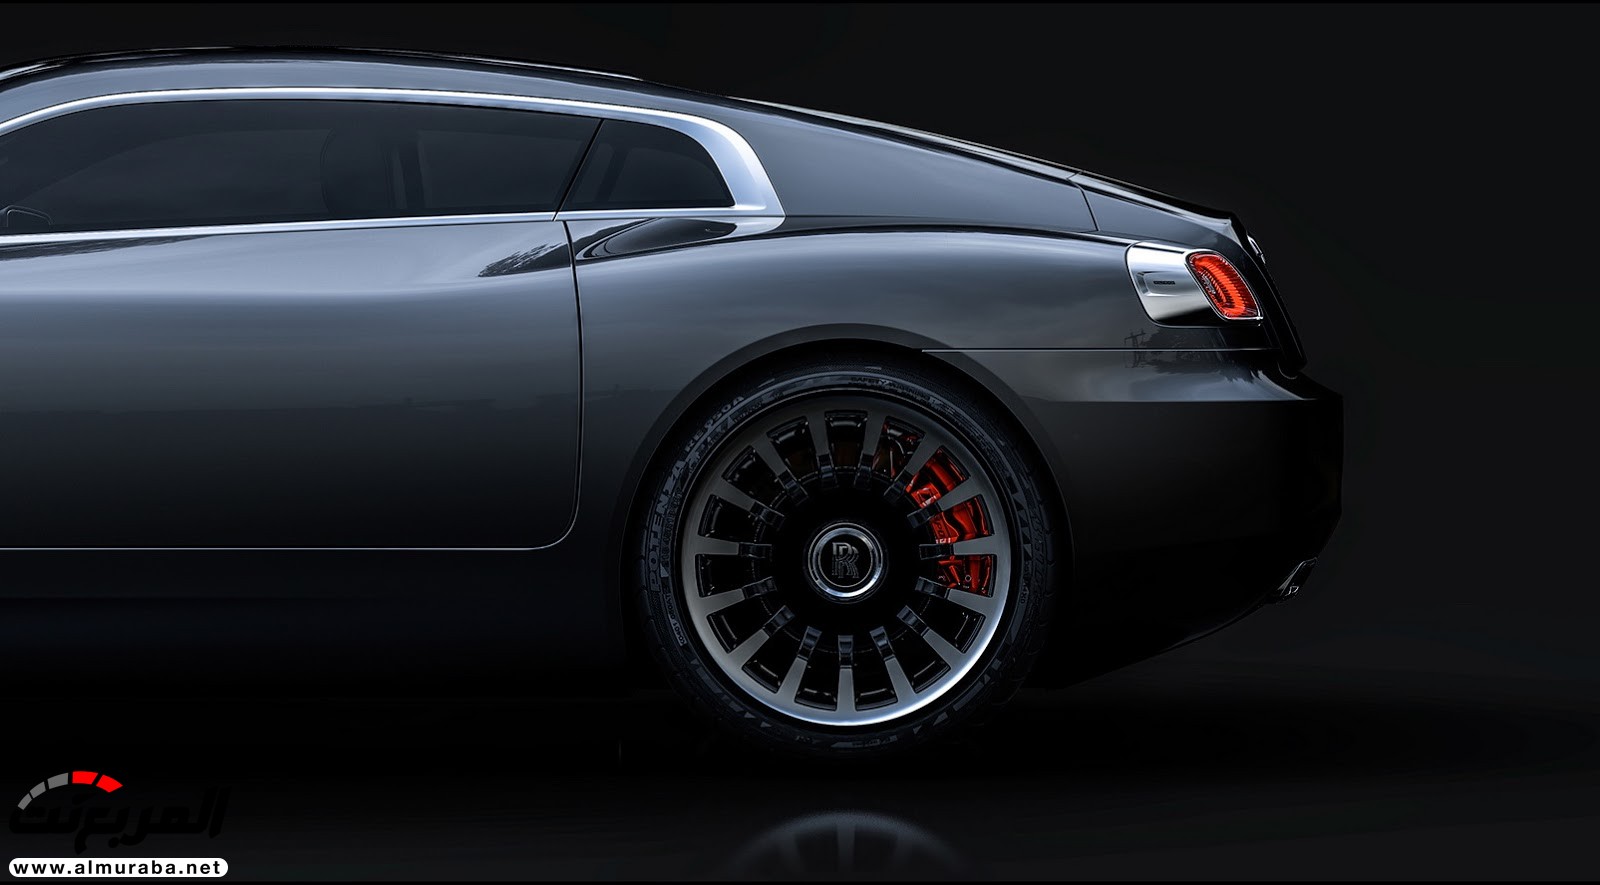 "صور افتراضية" لما يمكن أن تبدو عليه "رولز رويس" رايث كوبيه 2020 Rolls-Royce Wraith Coupe 66